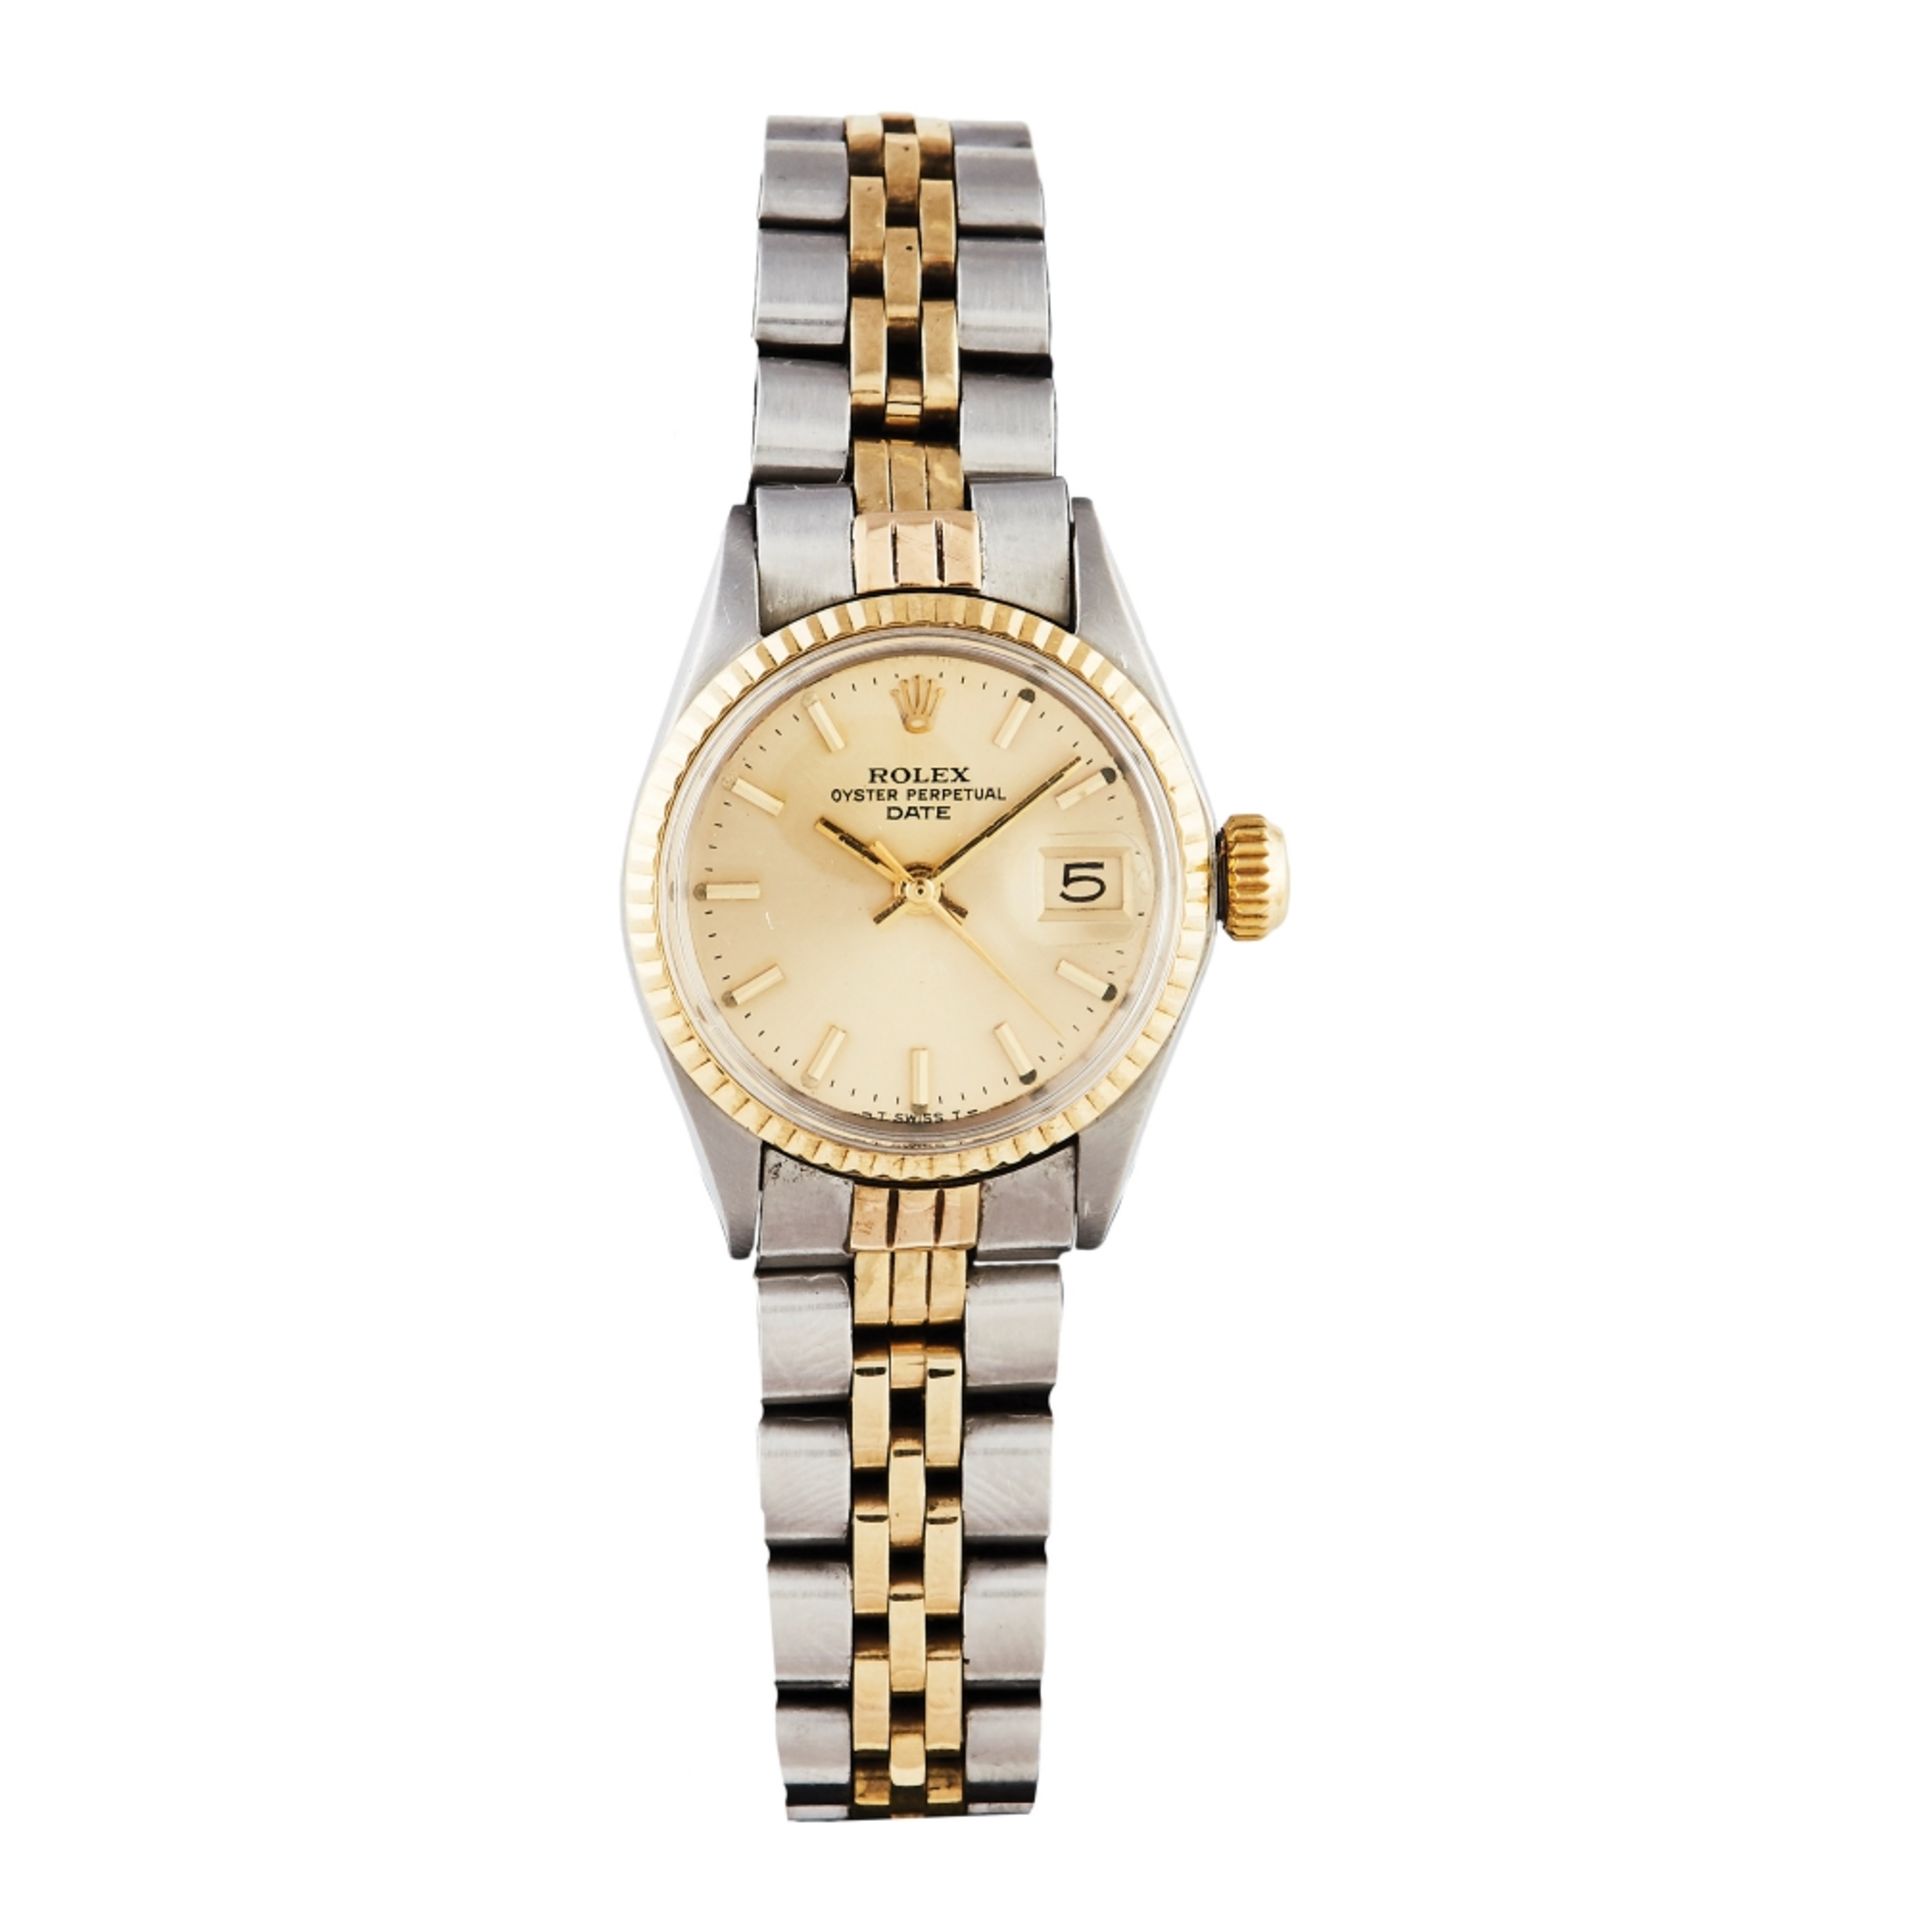 Reloj Rolex Oyster Perpetual Date señora en acero y oro. Mecanismo automático.